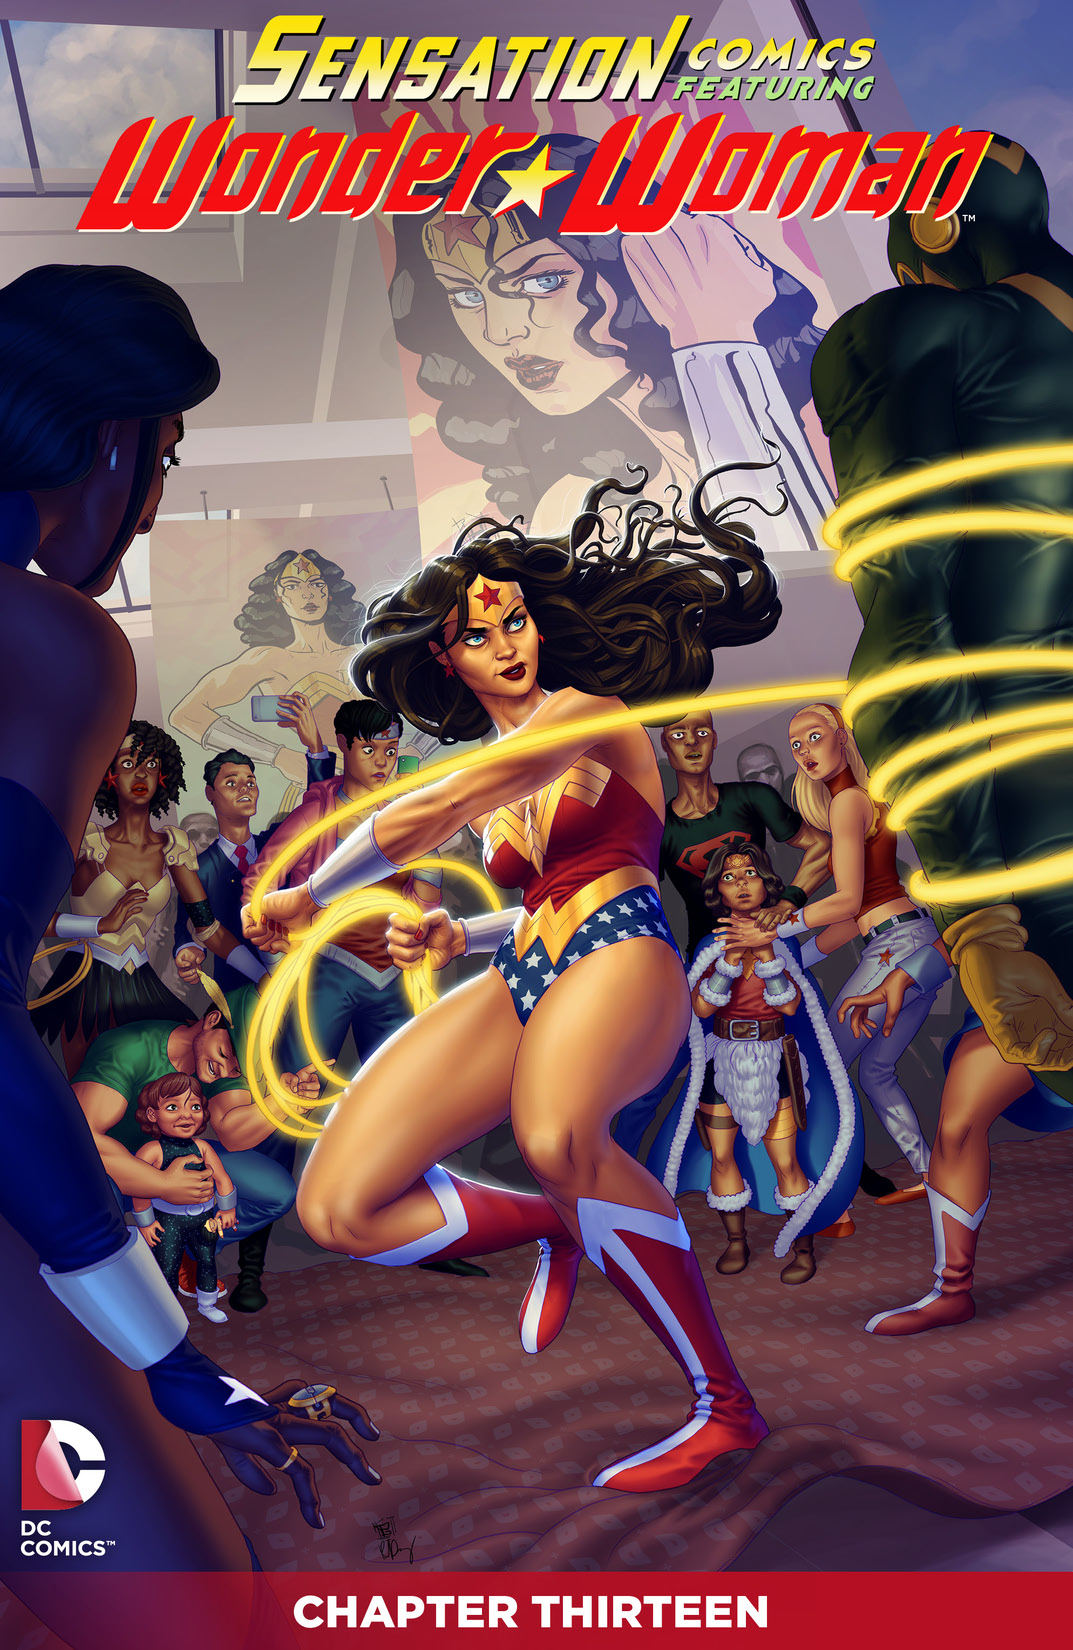 Sensation Comics Featuring Wonder Woman #13 preview images